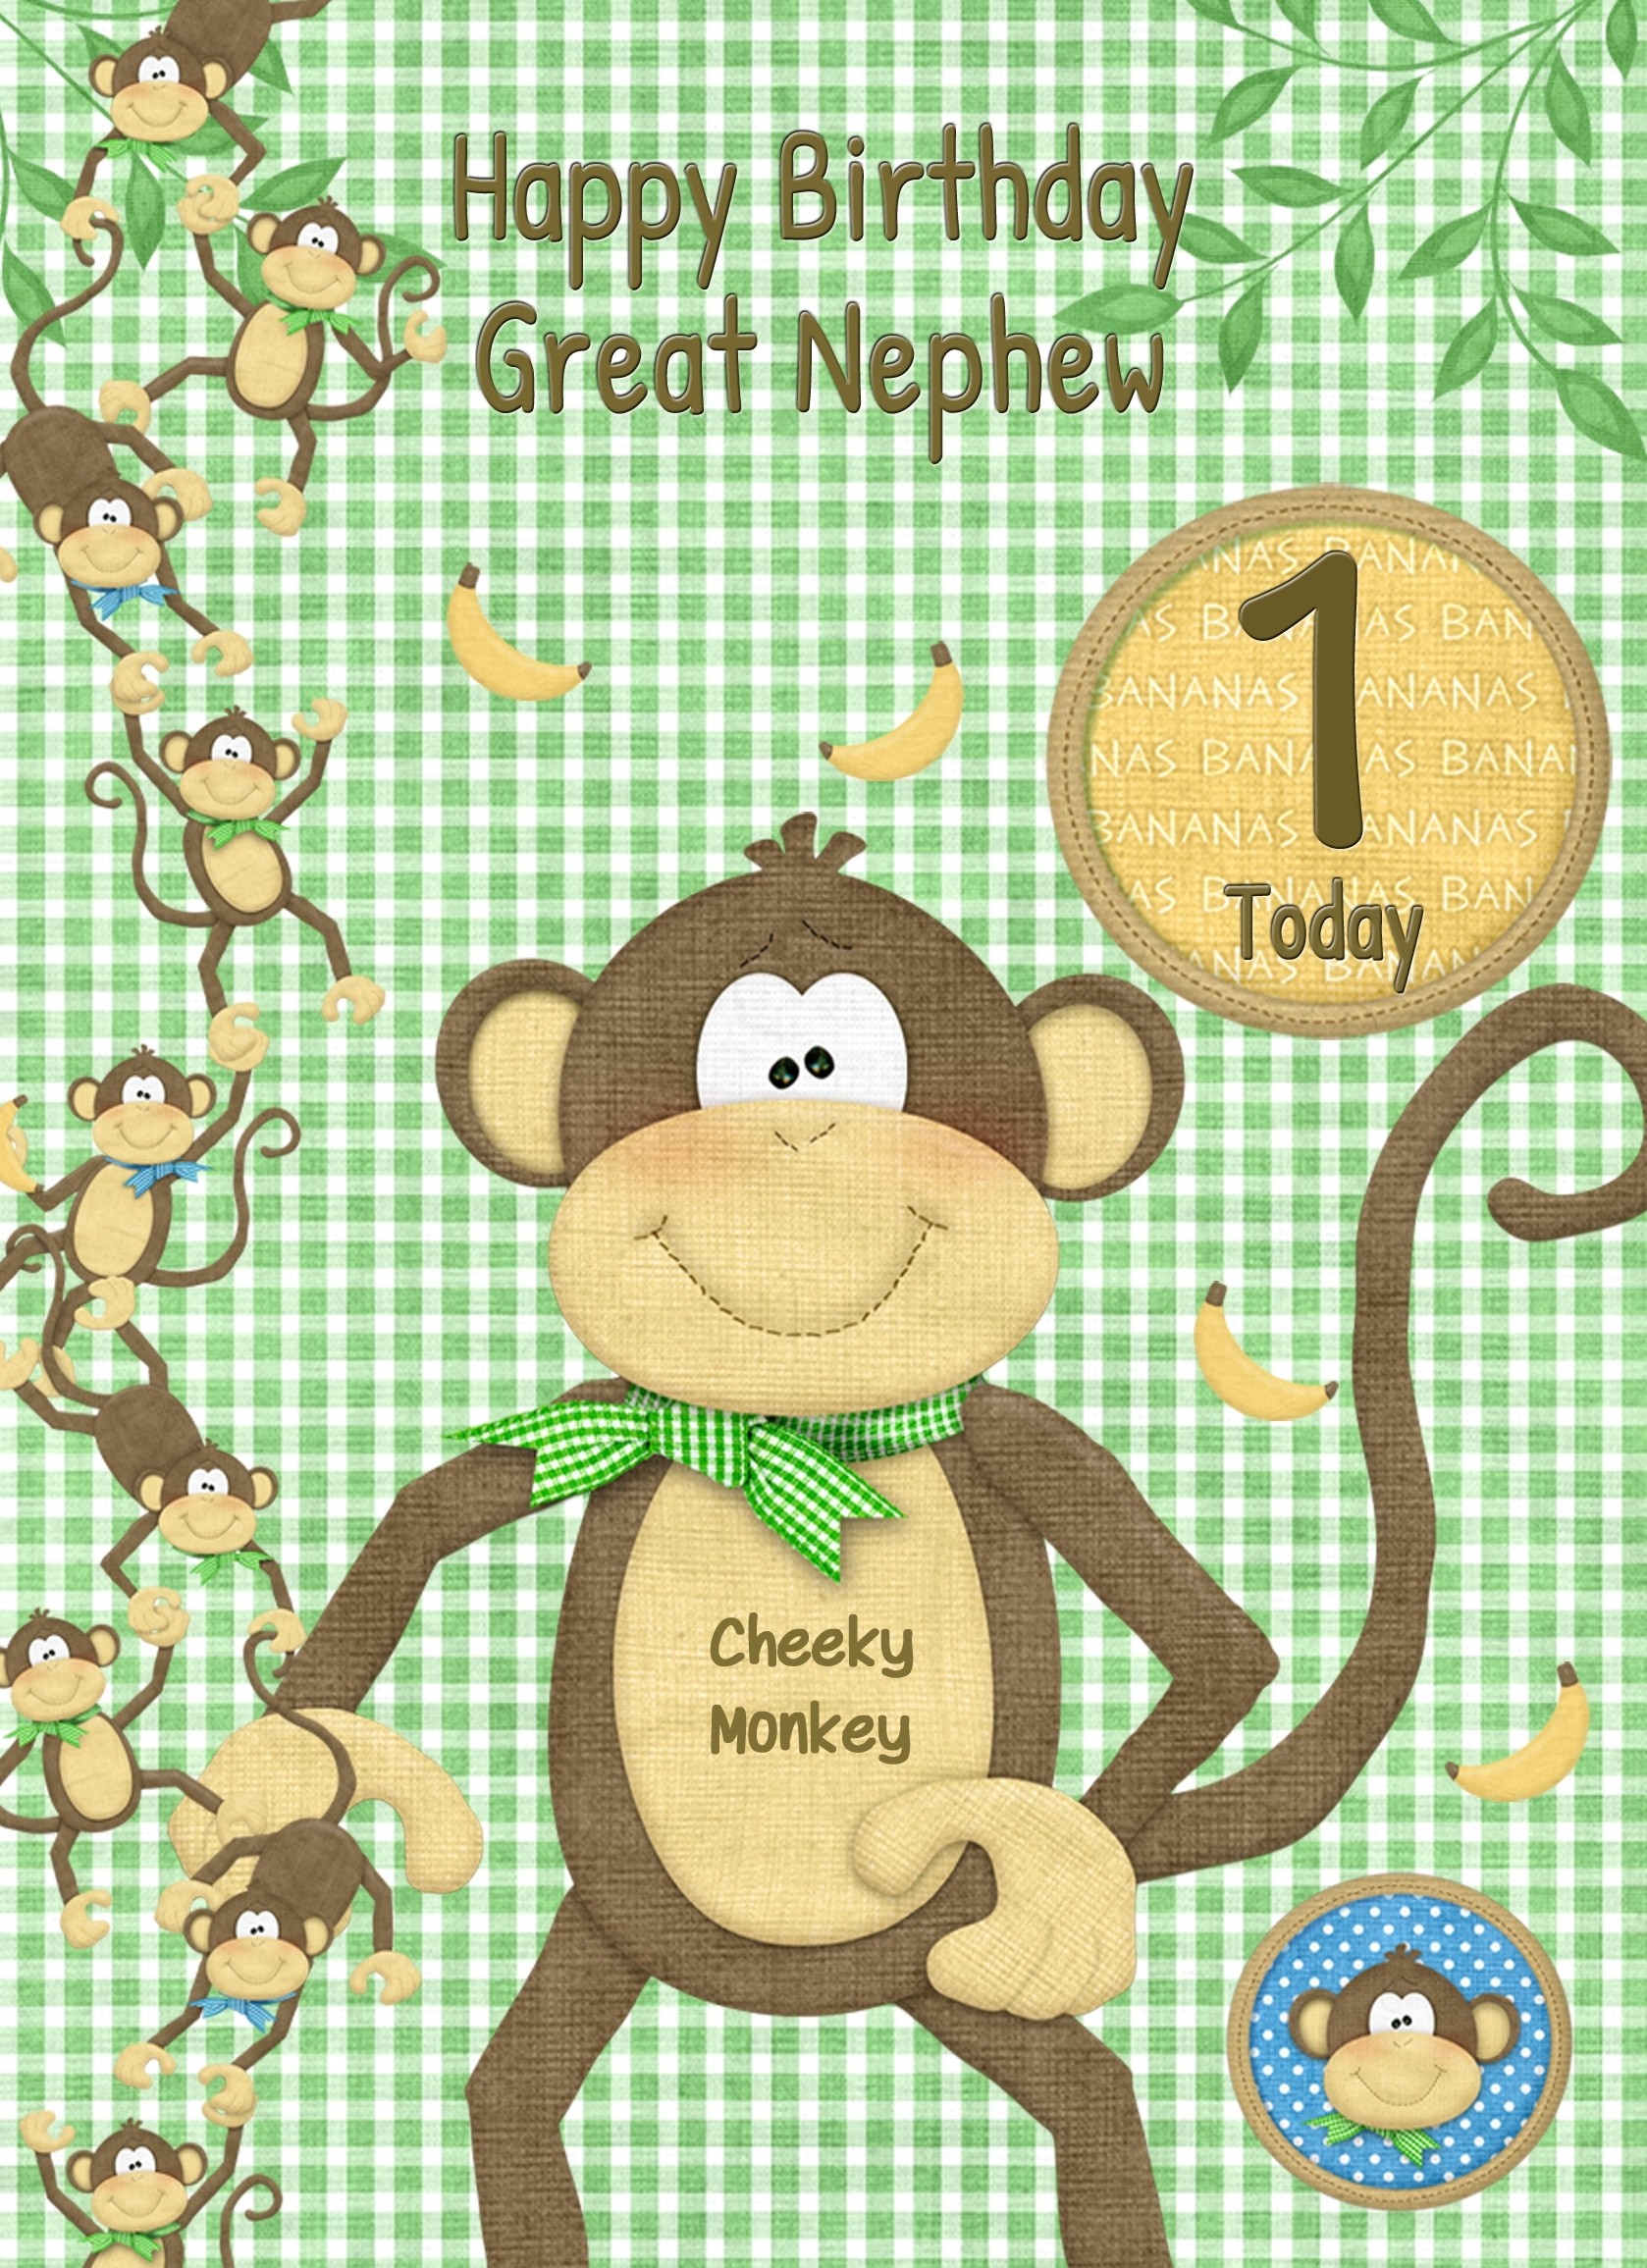 Kids 1st Birthday Cheeky Monkey Cartoon Card for Great Nephew